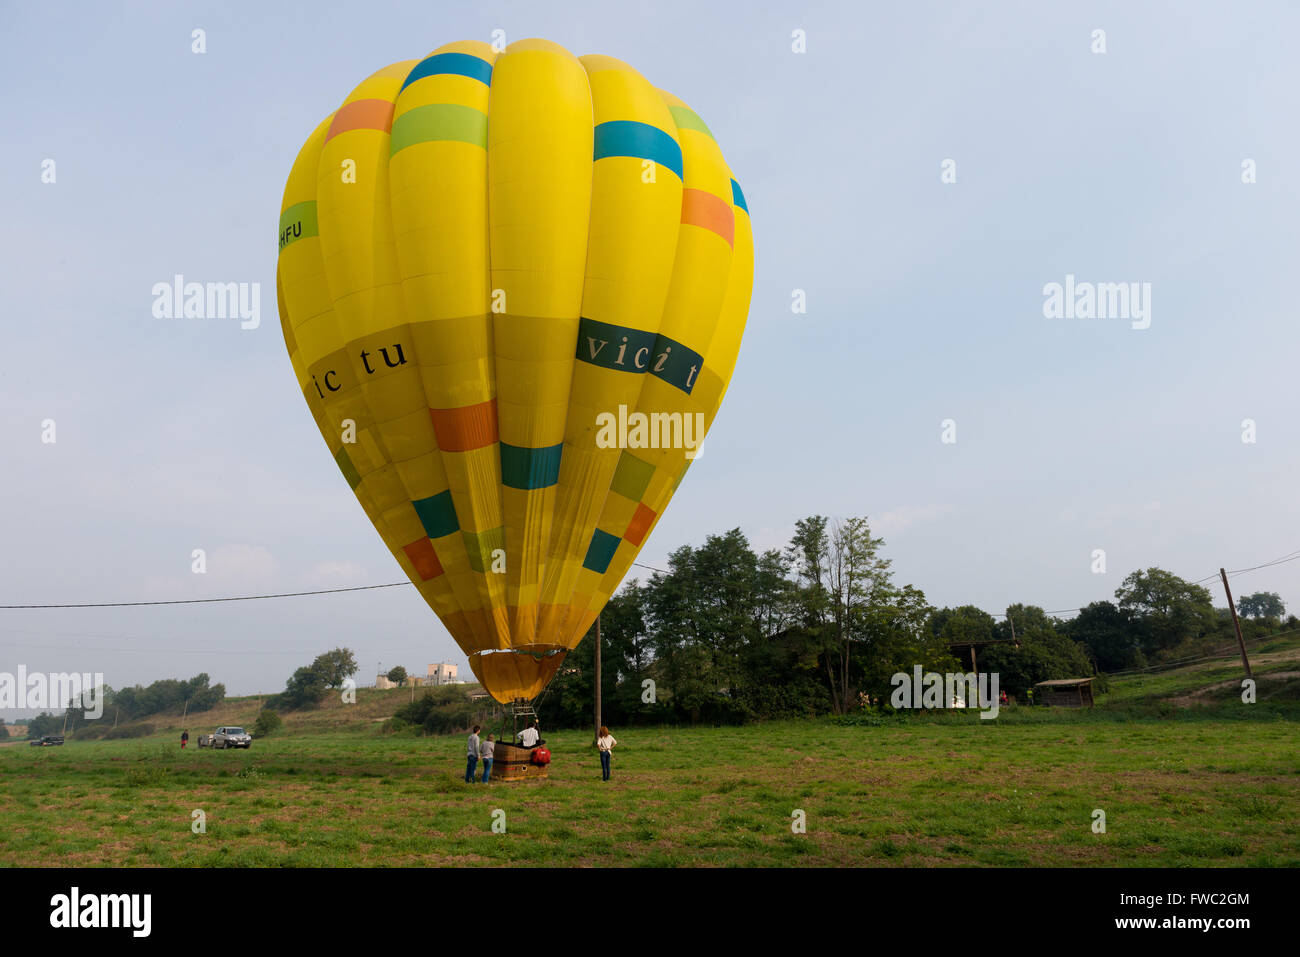 Ballon à air chaud sur le terrain, Espagne Banque D'Images